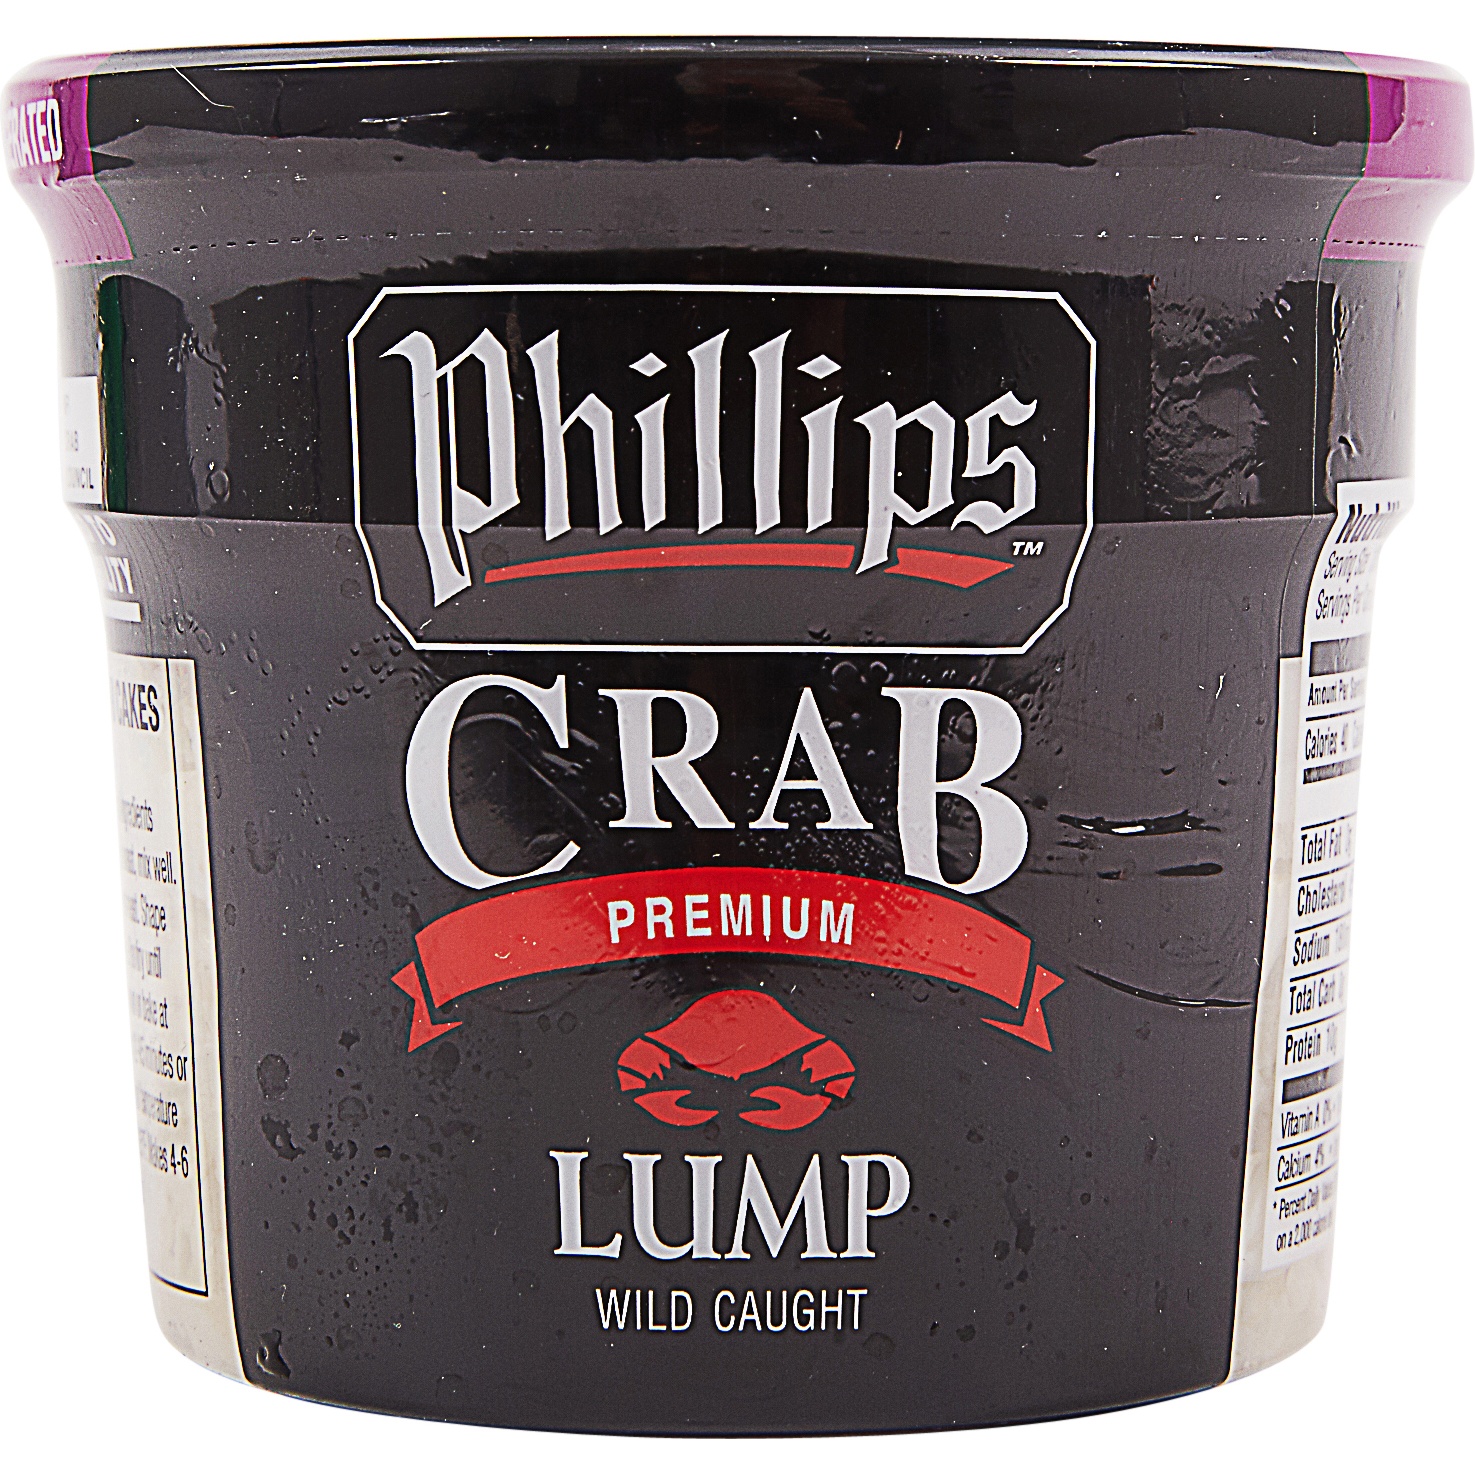 slide 1 of 2, Phillips Lump Wild Caught Premium Crab Meat, 16 oz; 1 lb